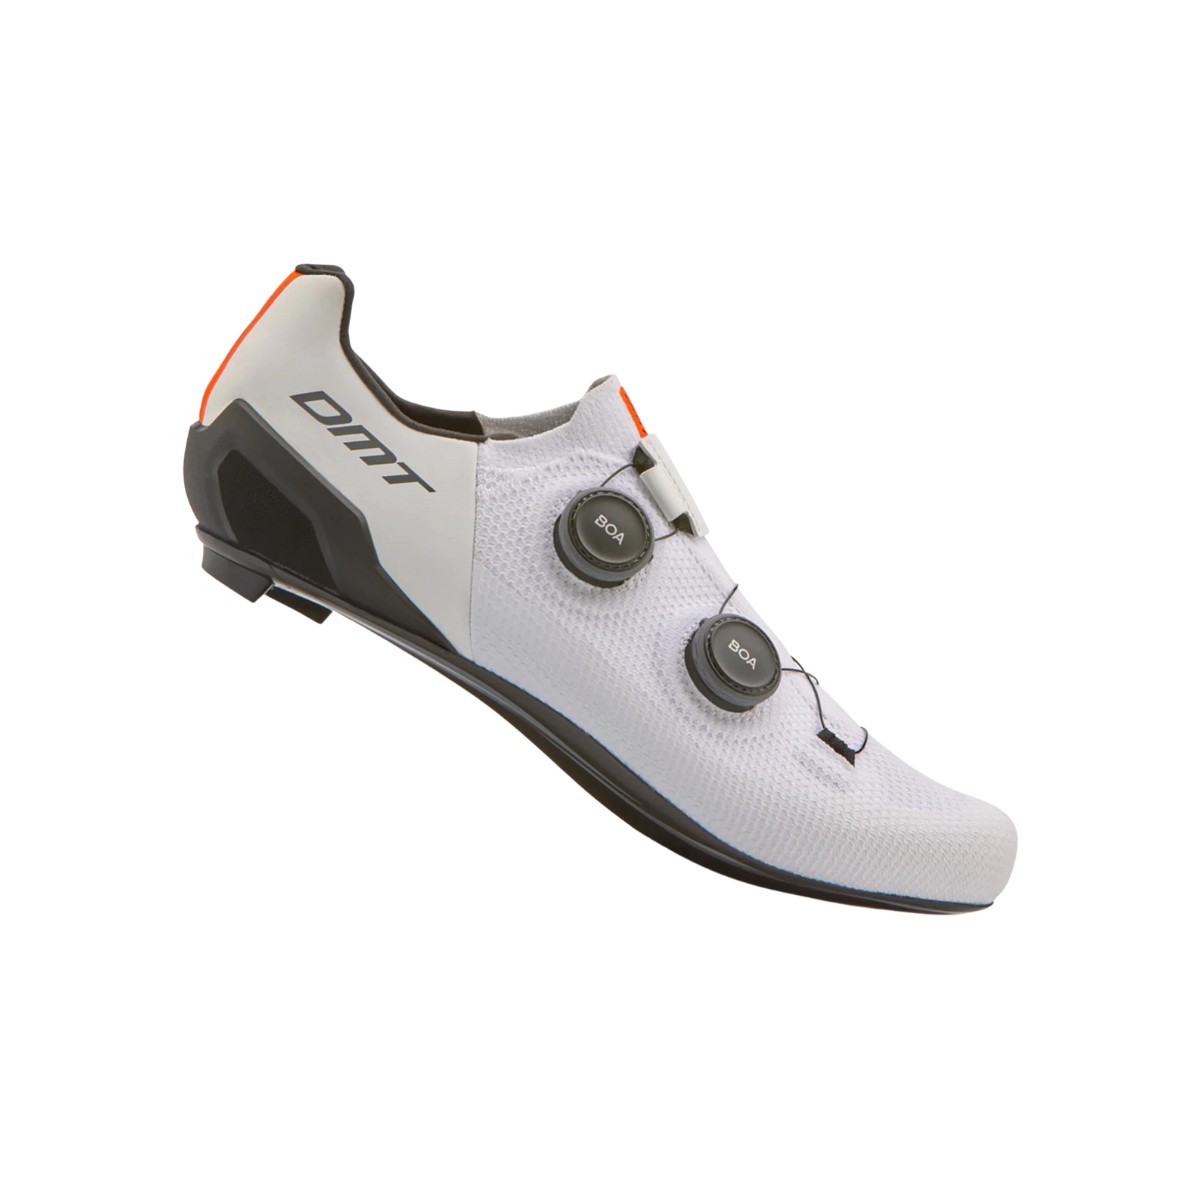 It is günstig Kaufen-Schuhe DMT SH10 weiß, Größe 45 - EUR. Schuhe DMT SH10 weiß, Größe 45 - EUR <![CDATA[DMT SH10 WEISSE SCHUHE Wir haben die unglaubliche Passform und den Komfort unserer 3D-Strickkonstruktion mit der zusätzlichen Anpassbarkeit 